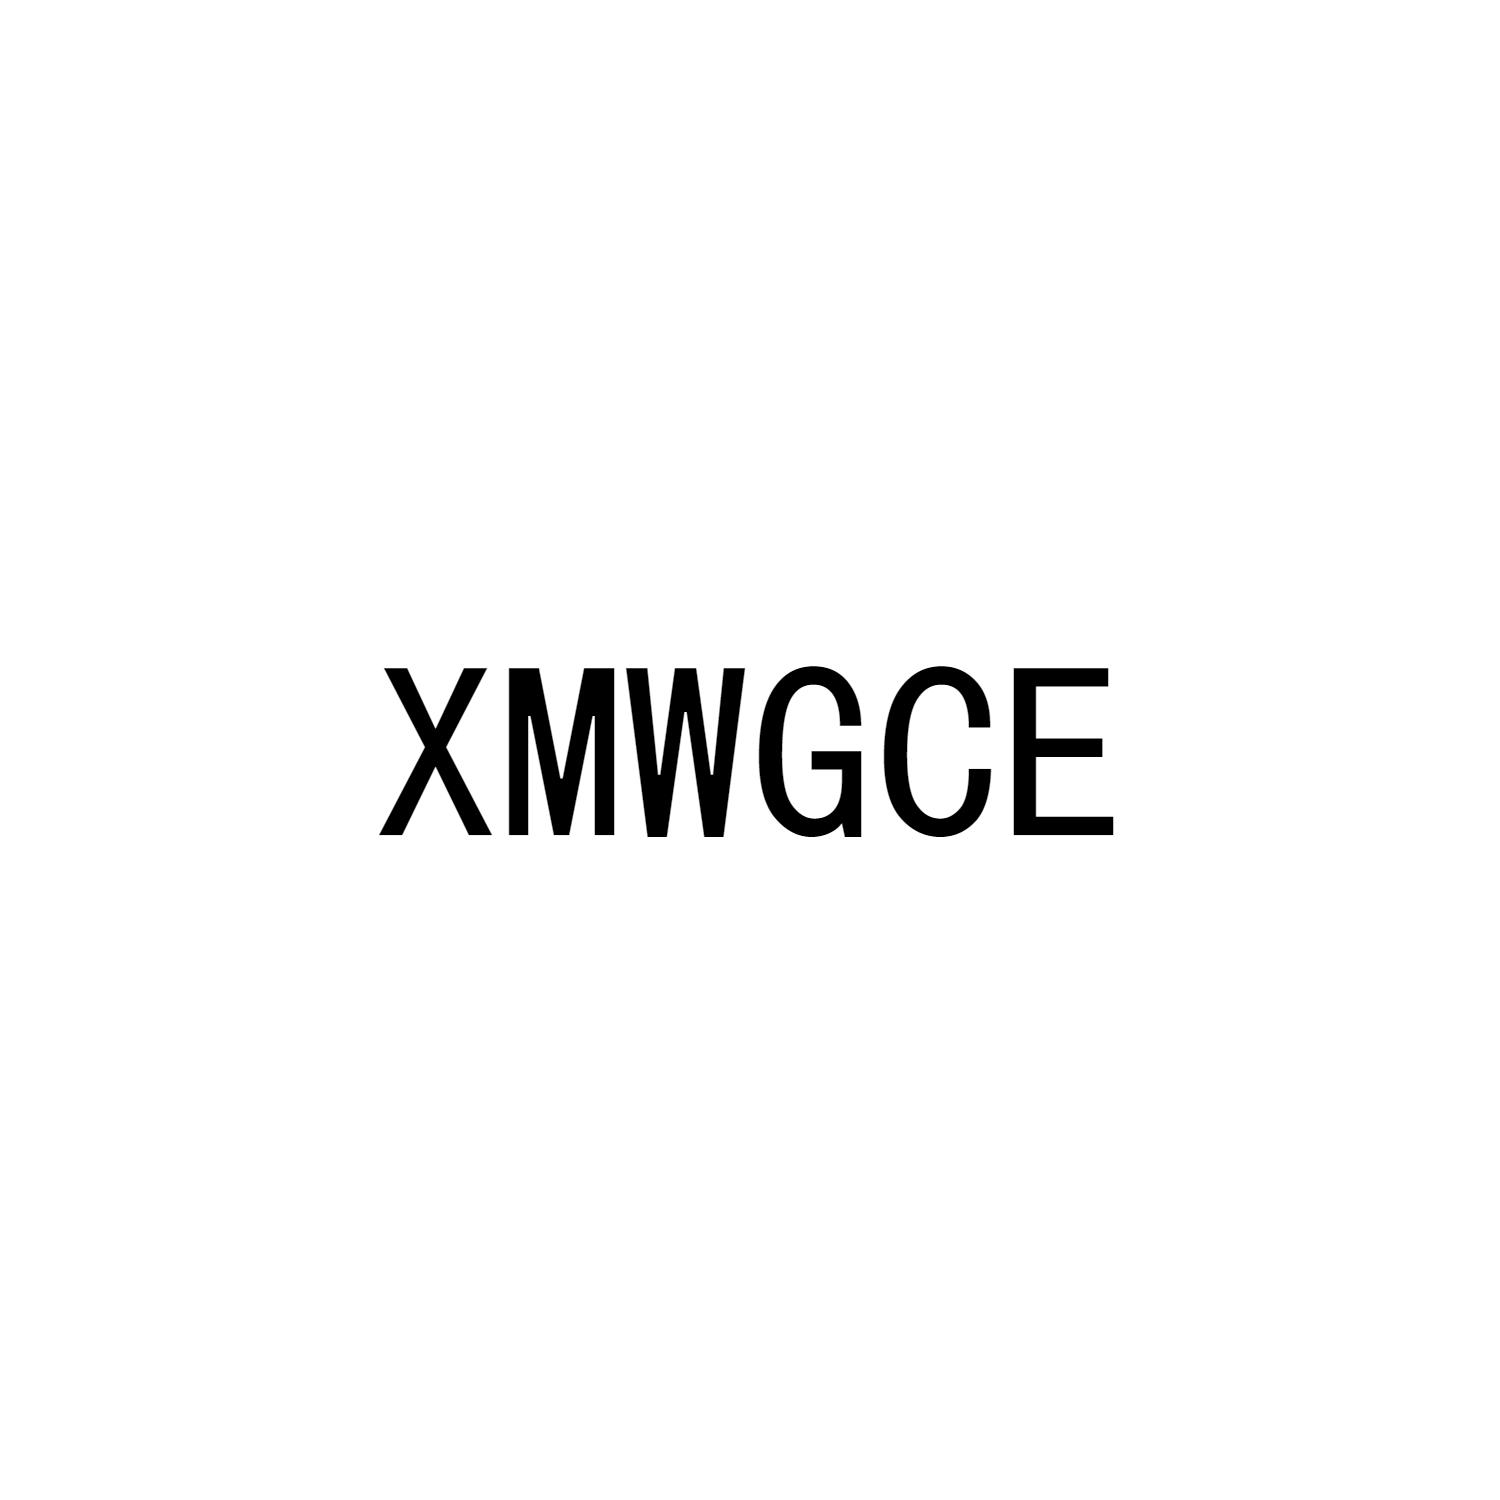 XMWGCE